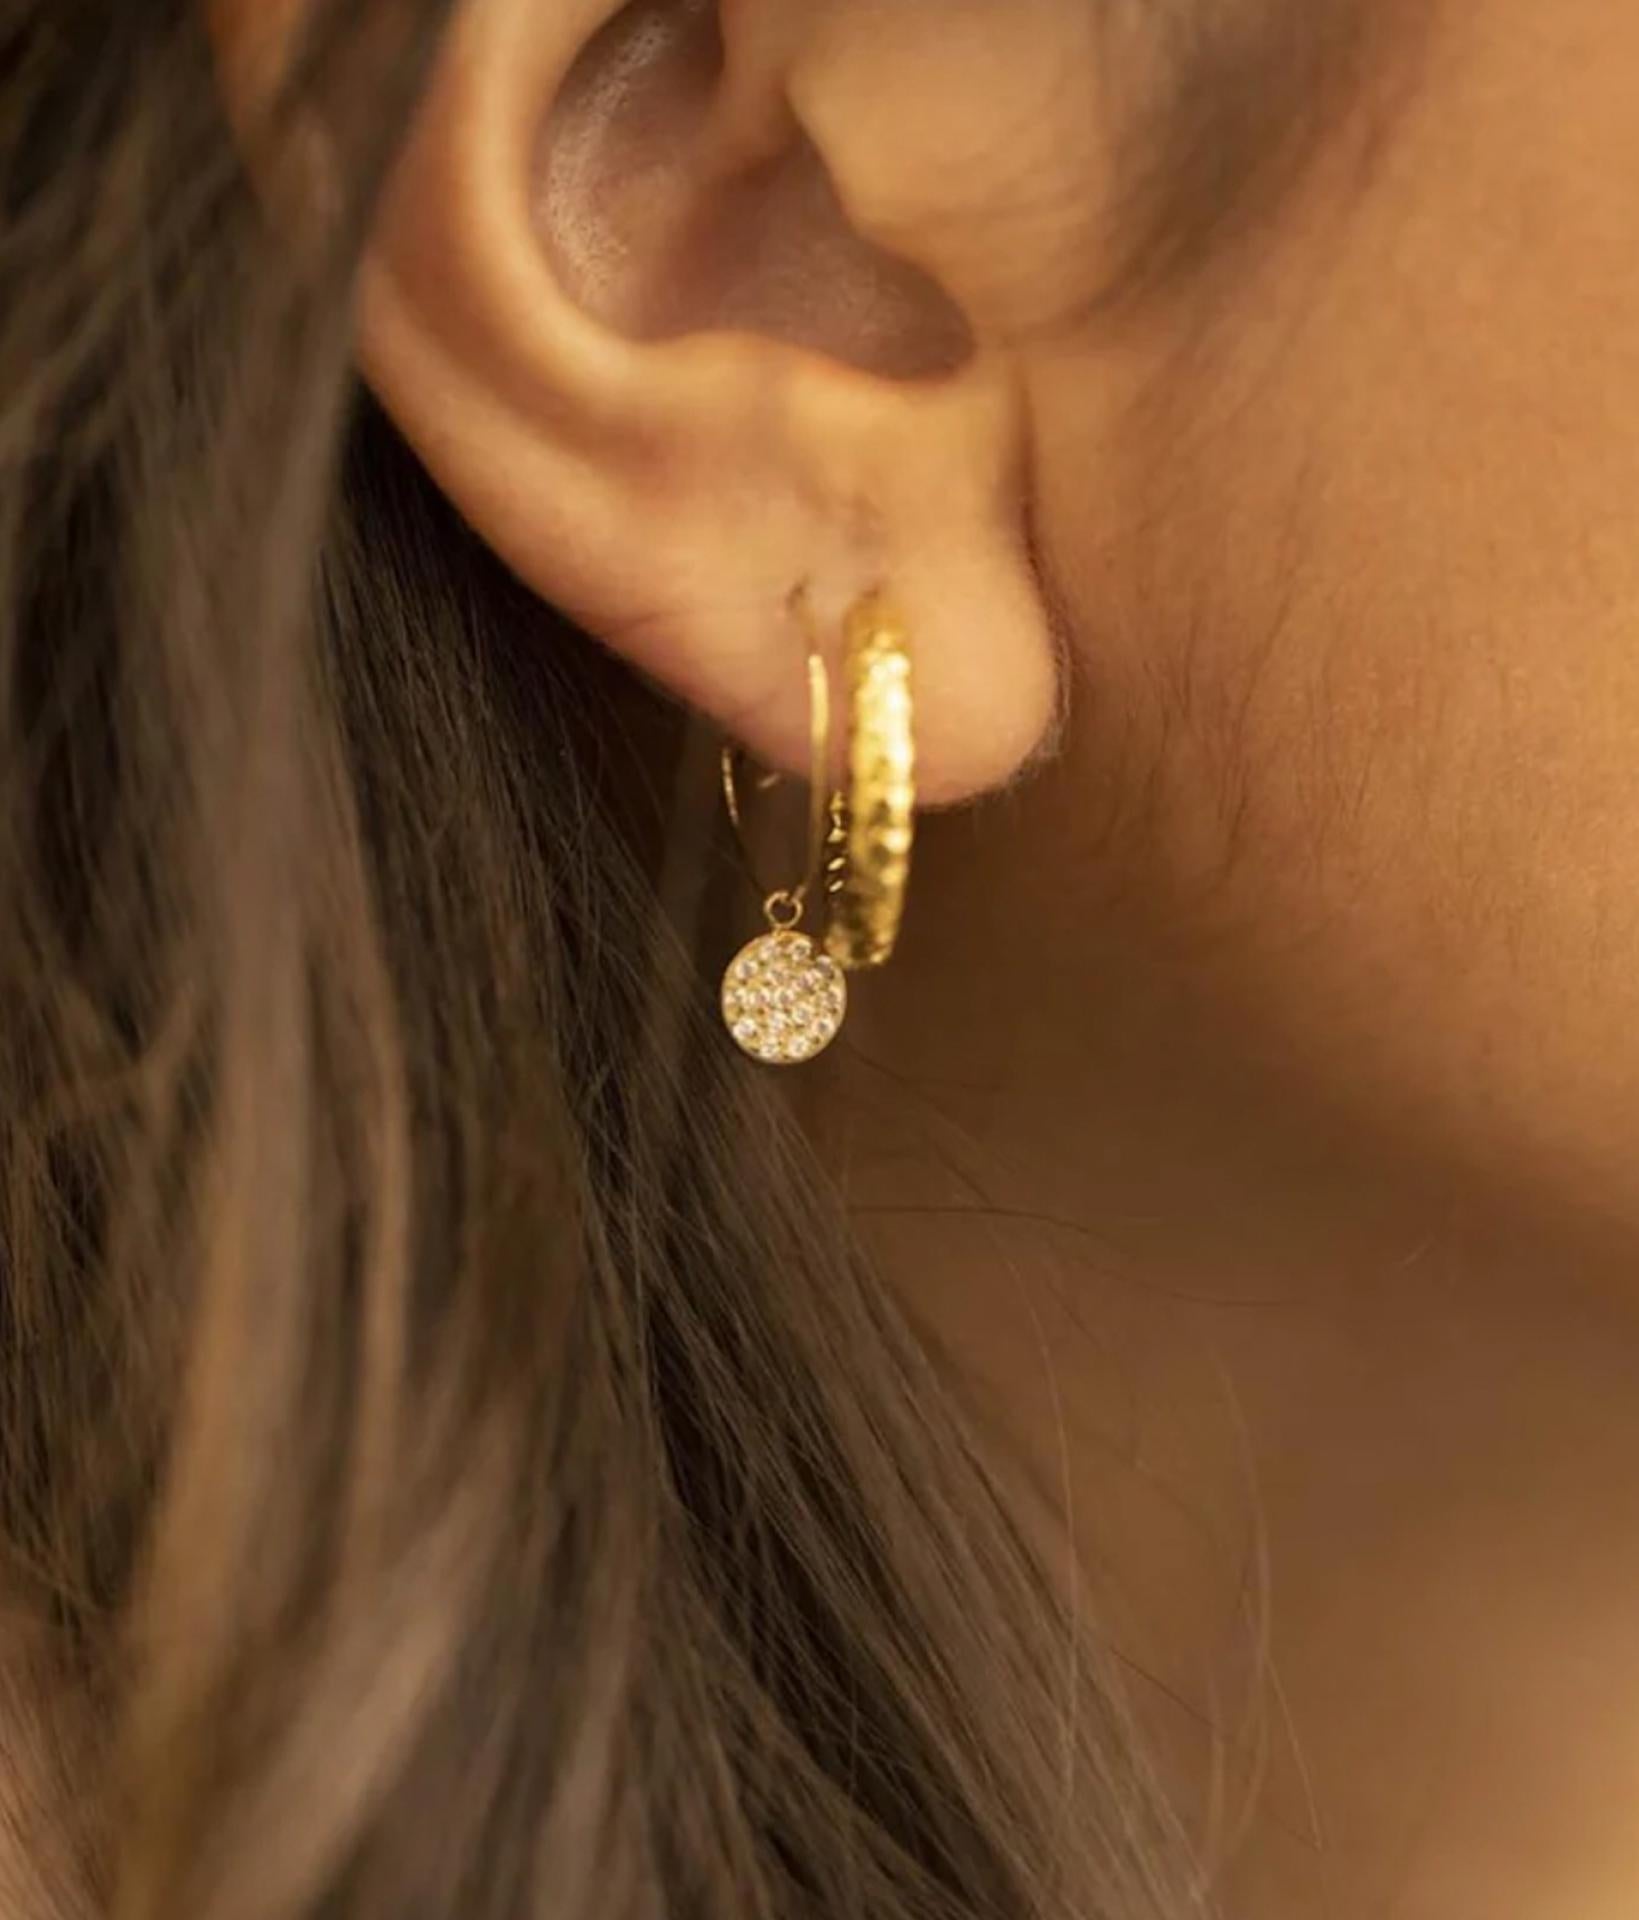 Nahaufnahme von einer jungen Frau, die zwei zierliche Ohrringe mit Zirkonia Steinen trägt